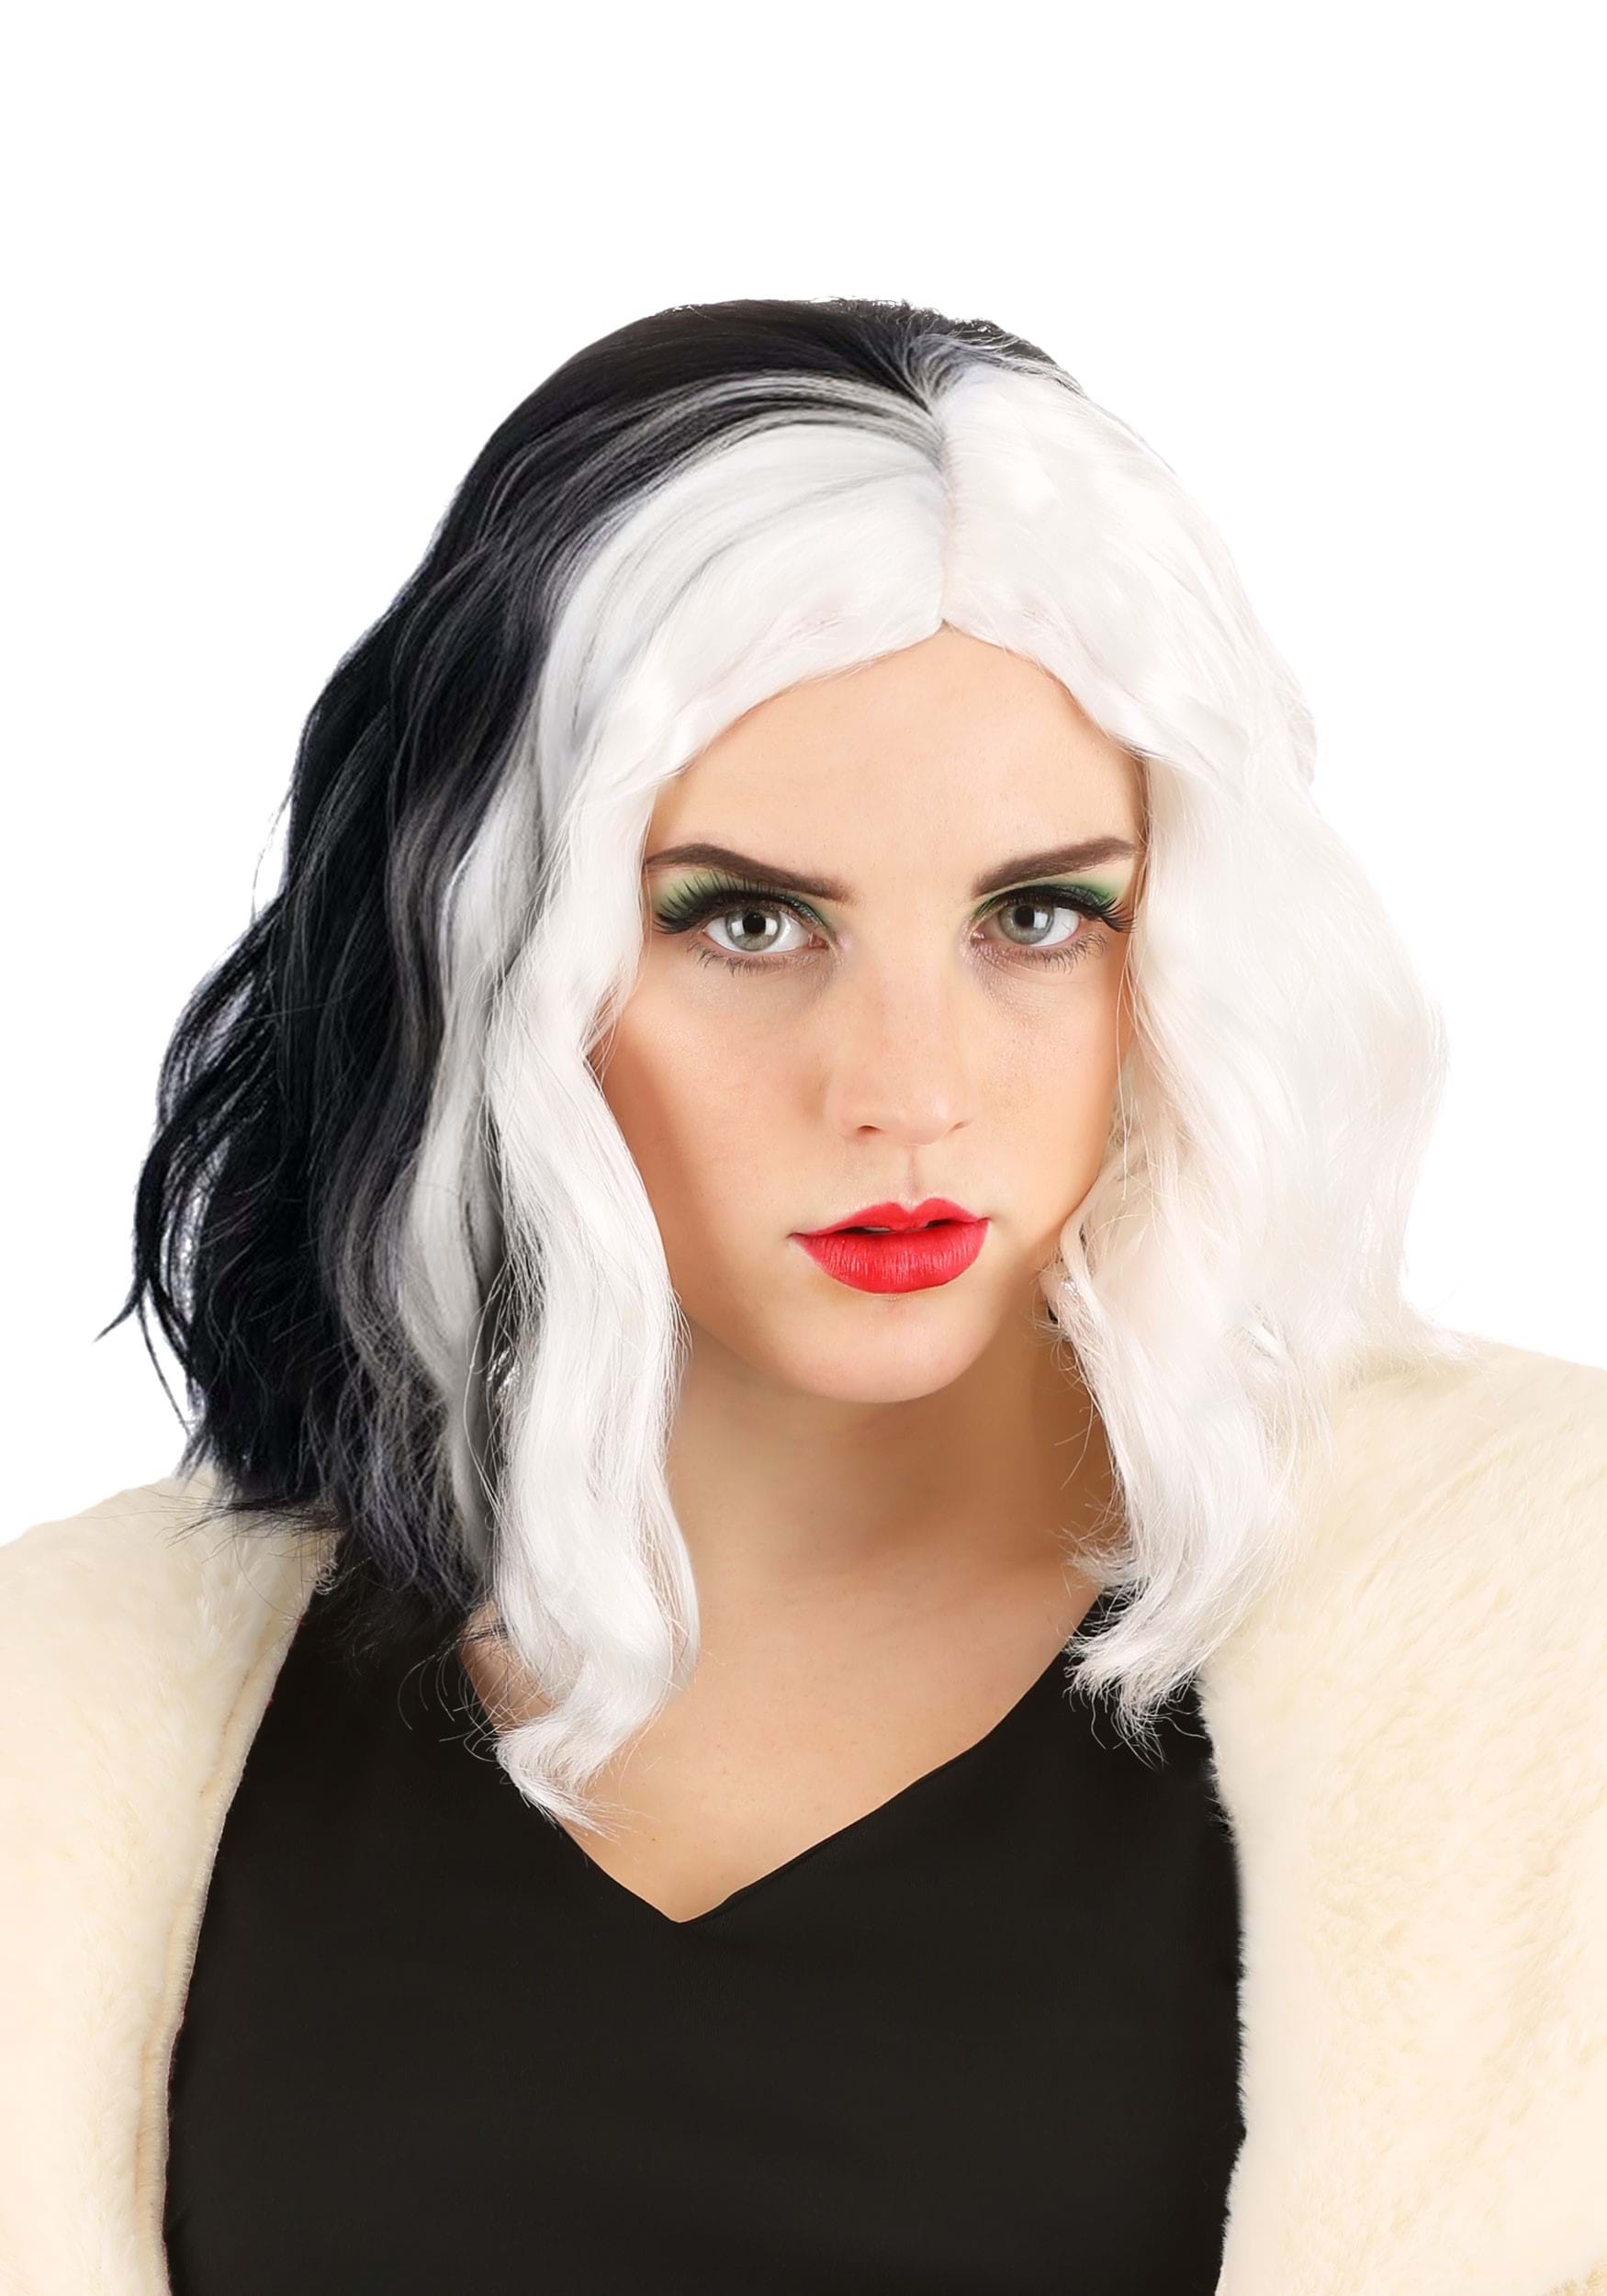 101 Dalmatians Cruella De Vil Trendy Wig